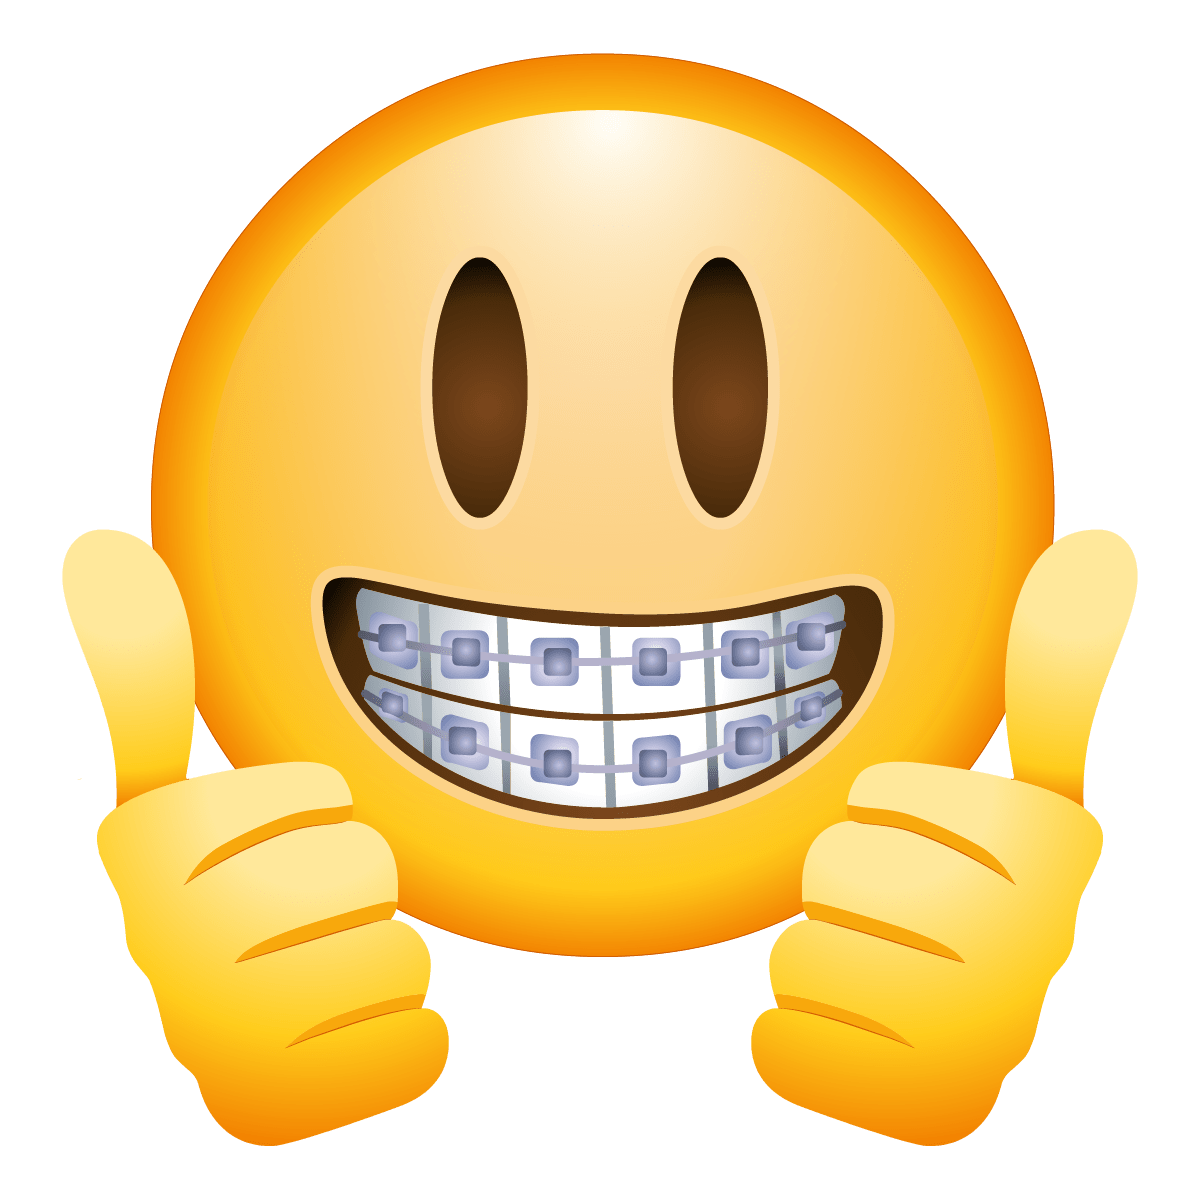 ยิ้ม Emoji ใบหน้าภาพโปร่งใส